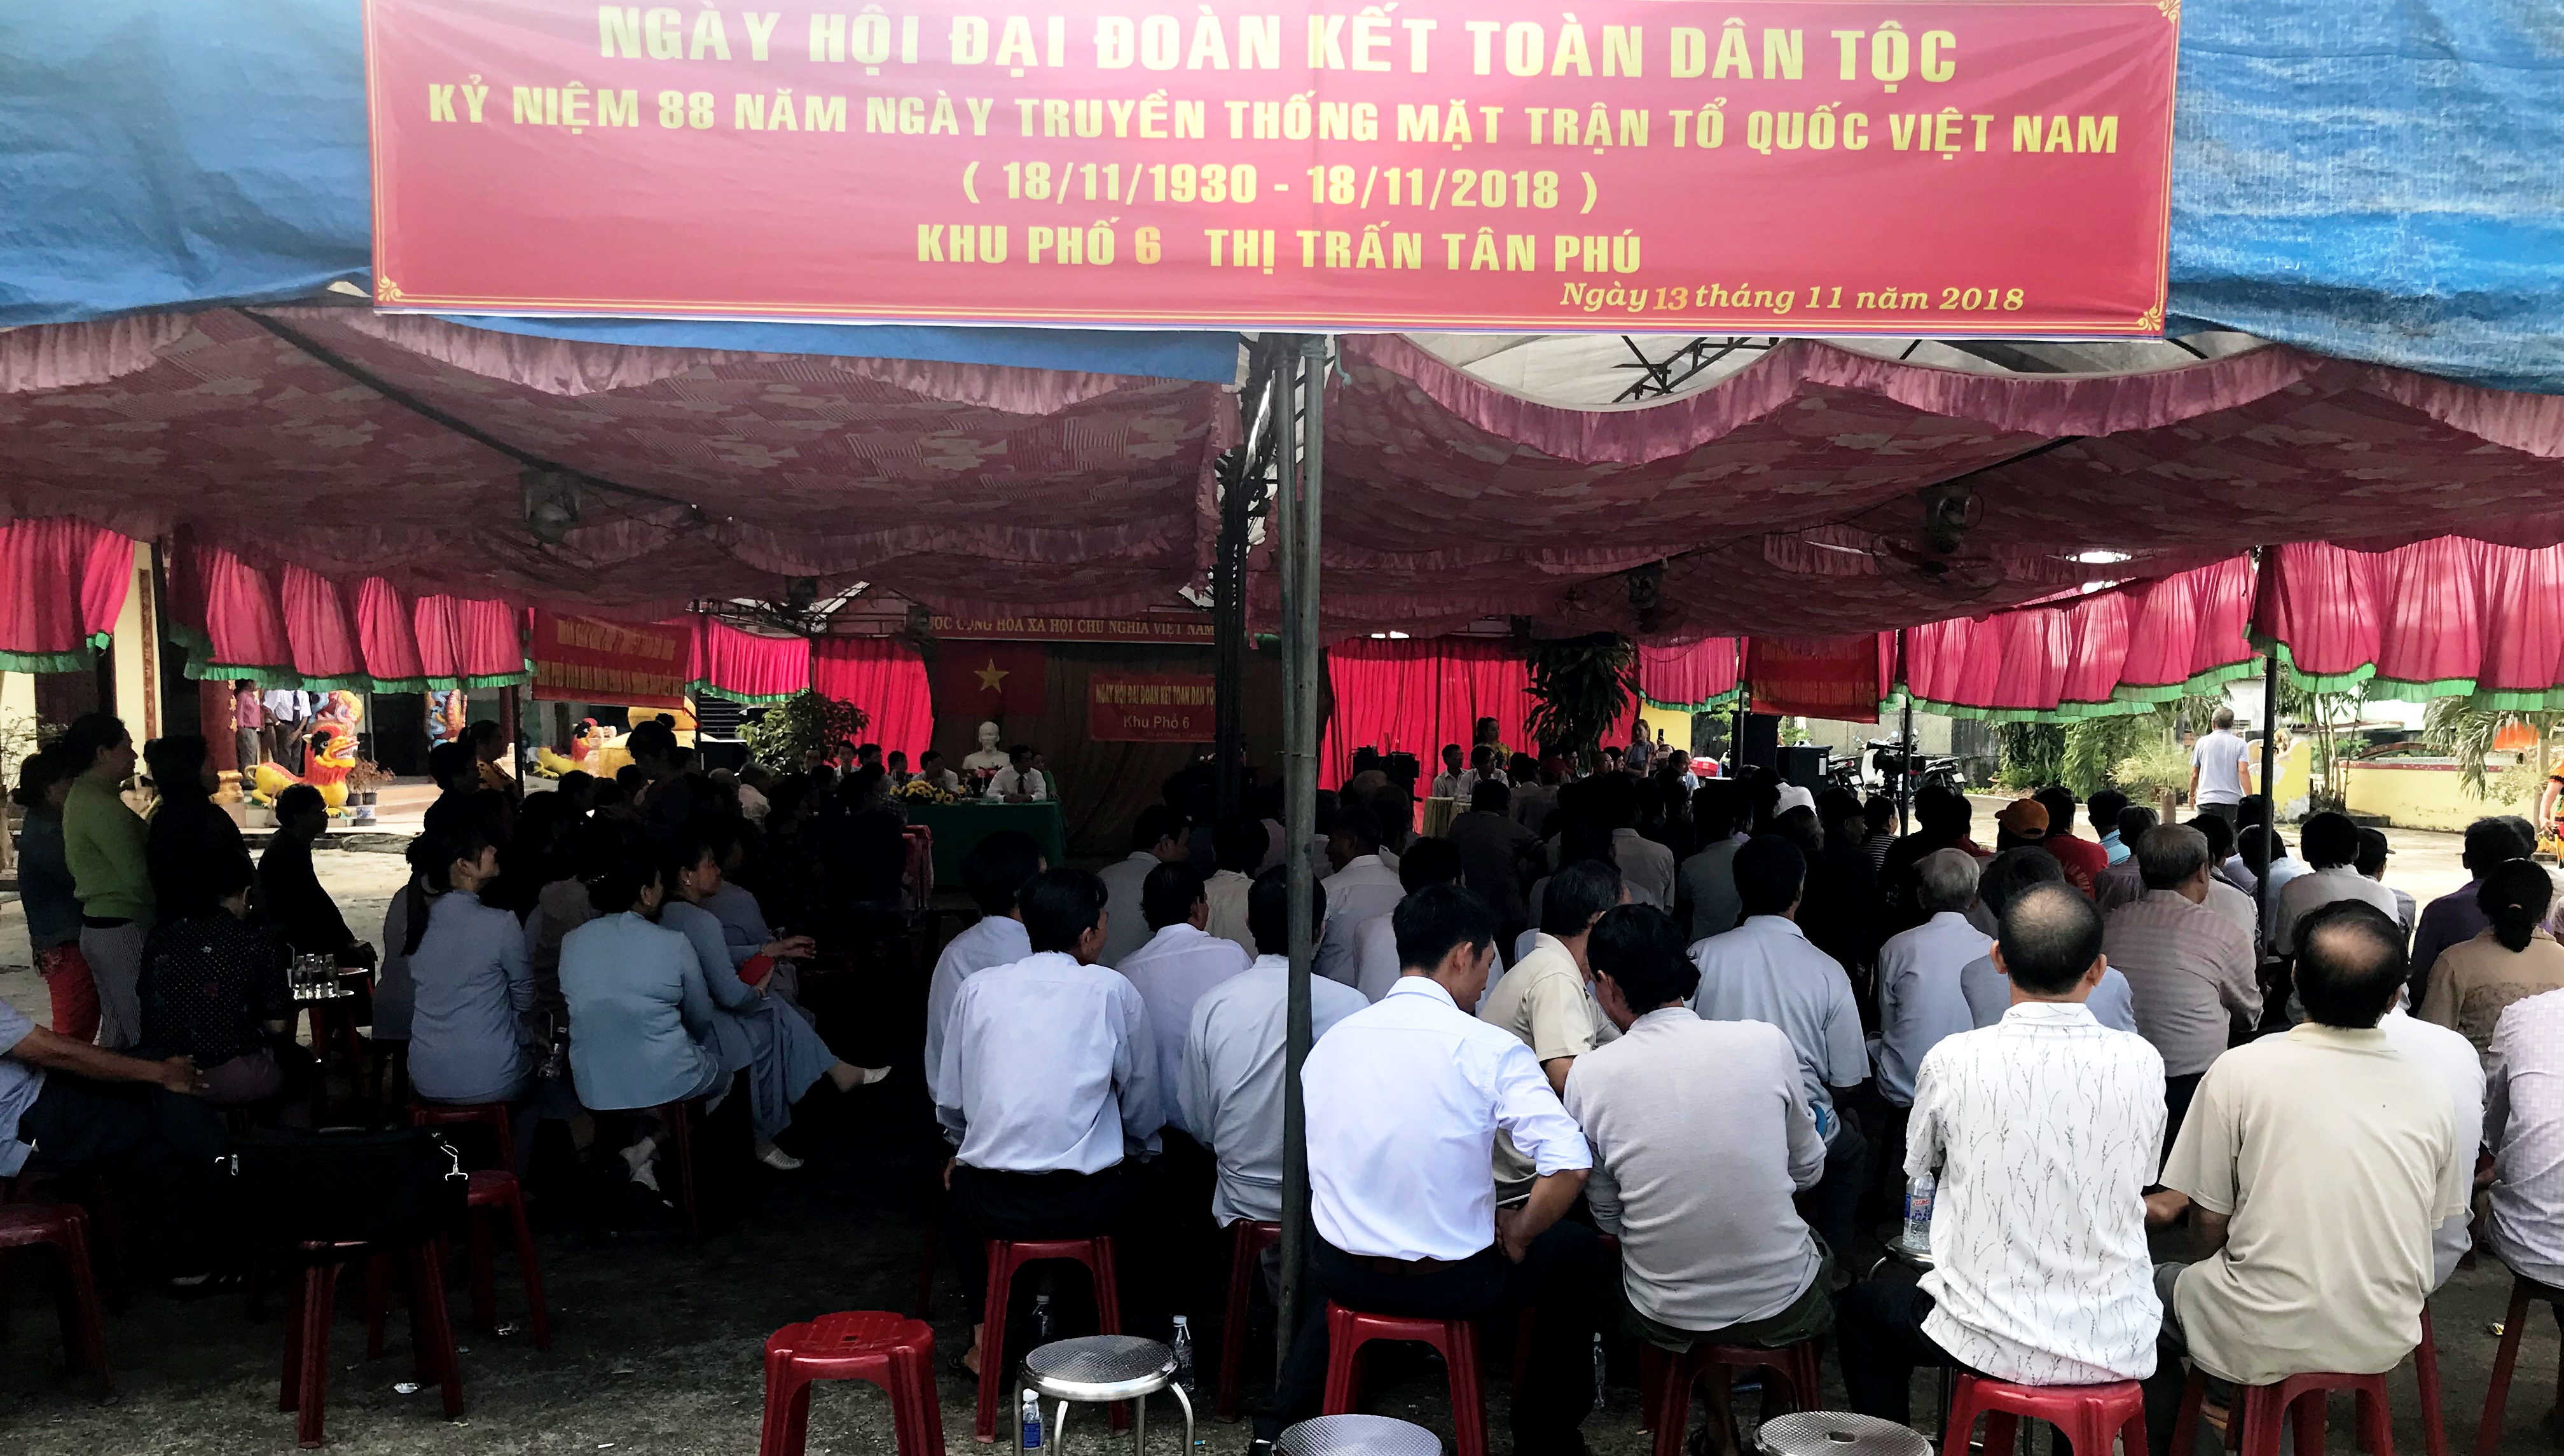 đông đảo người dân khu phố 6 (TT Tân Phú) đến tham dự ngày hội Đại đàon kết toàn dân tộc.jpeg